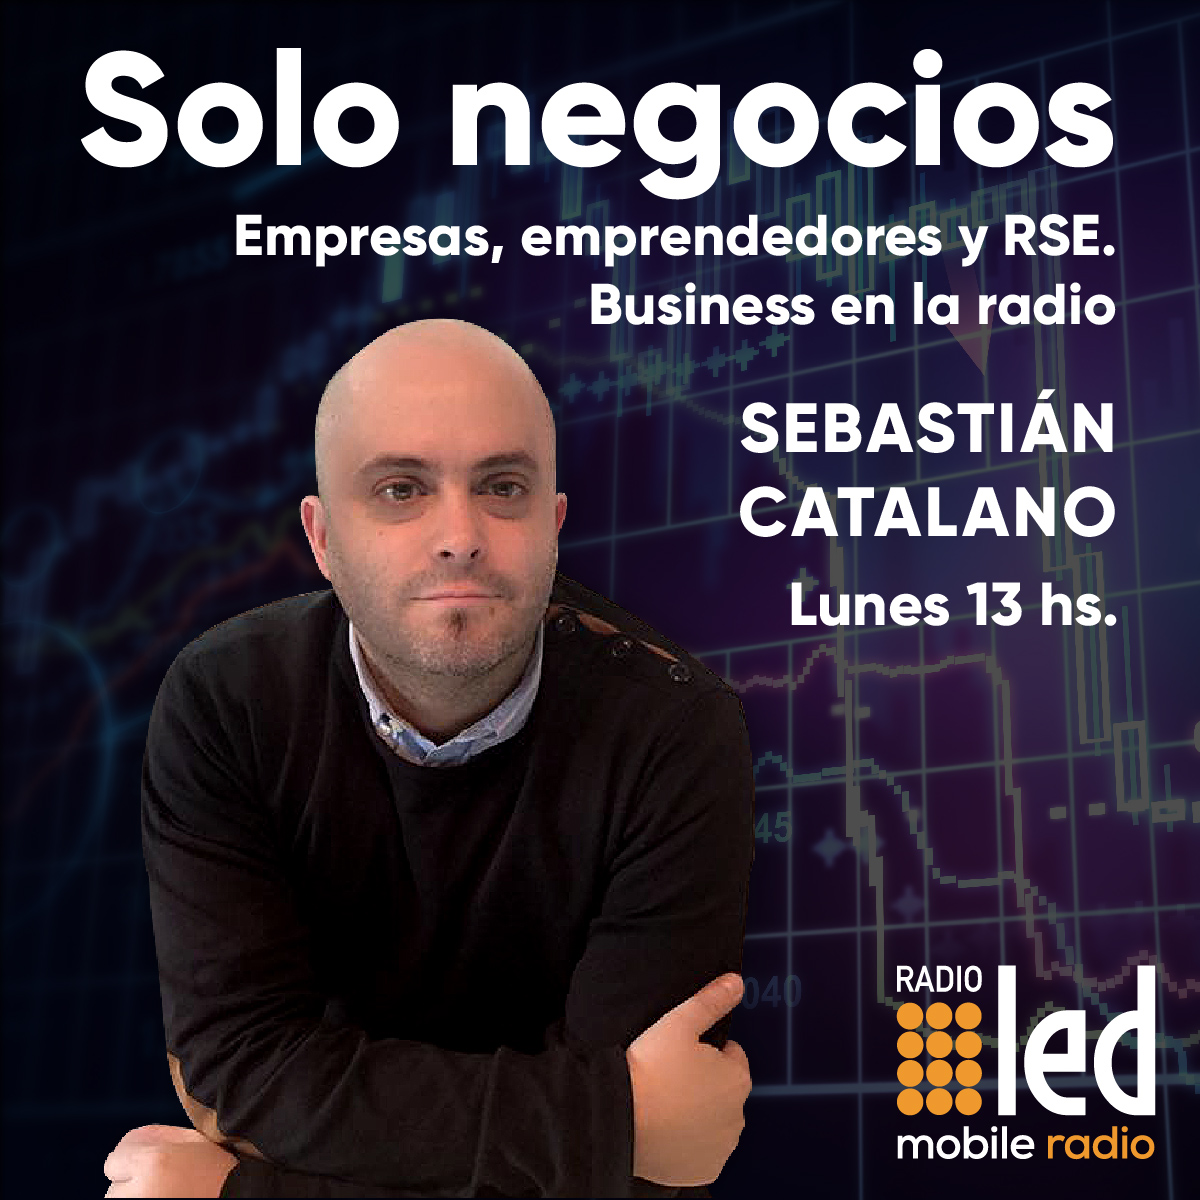 #Podcast Solo Negocios | 19.06: Avanza la banca digital en Argentina #Wanap #Multifinanzas